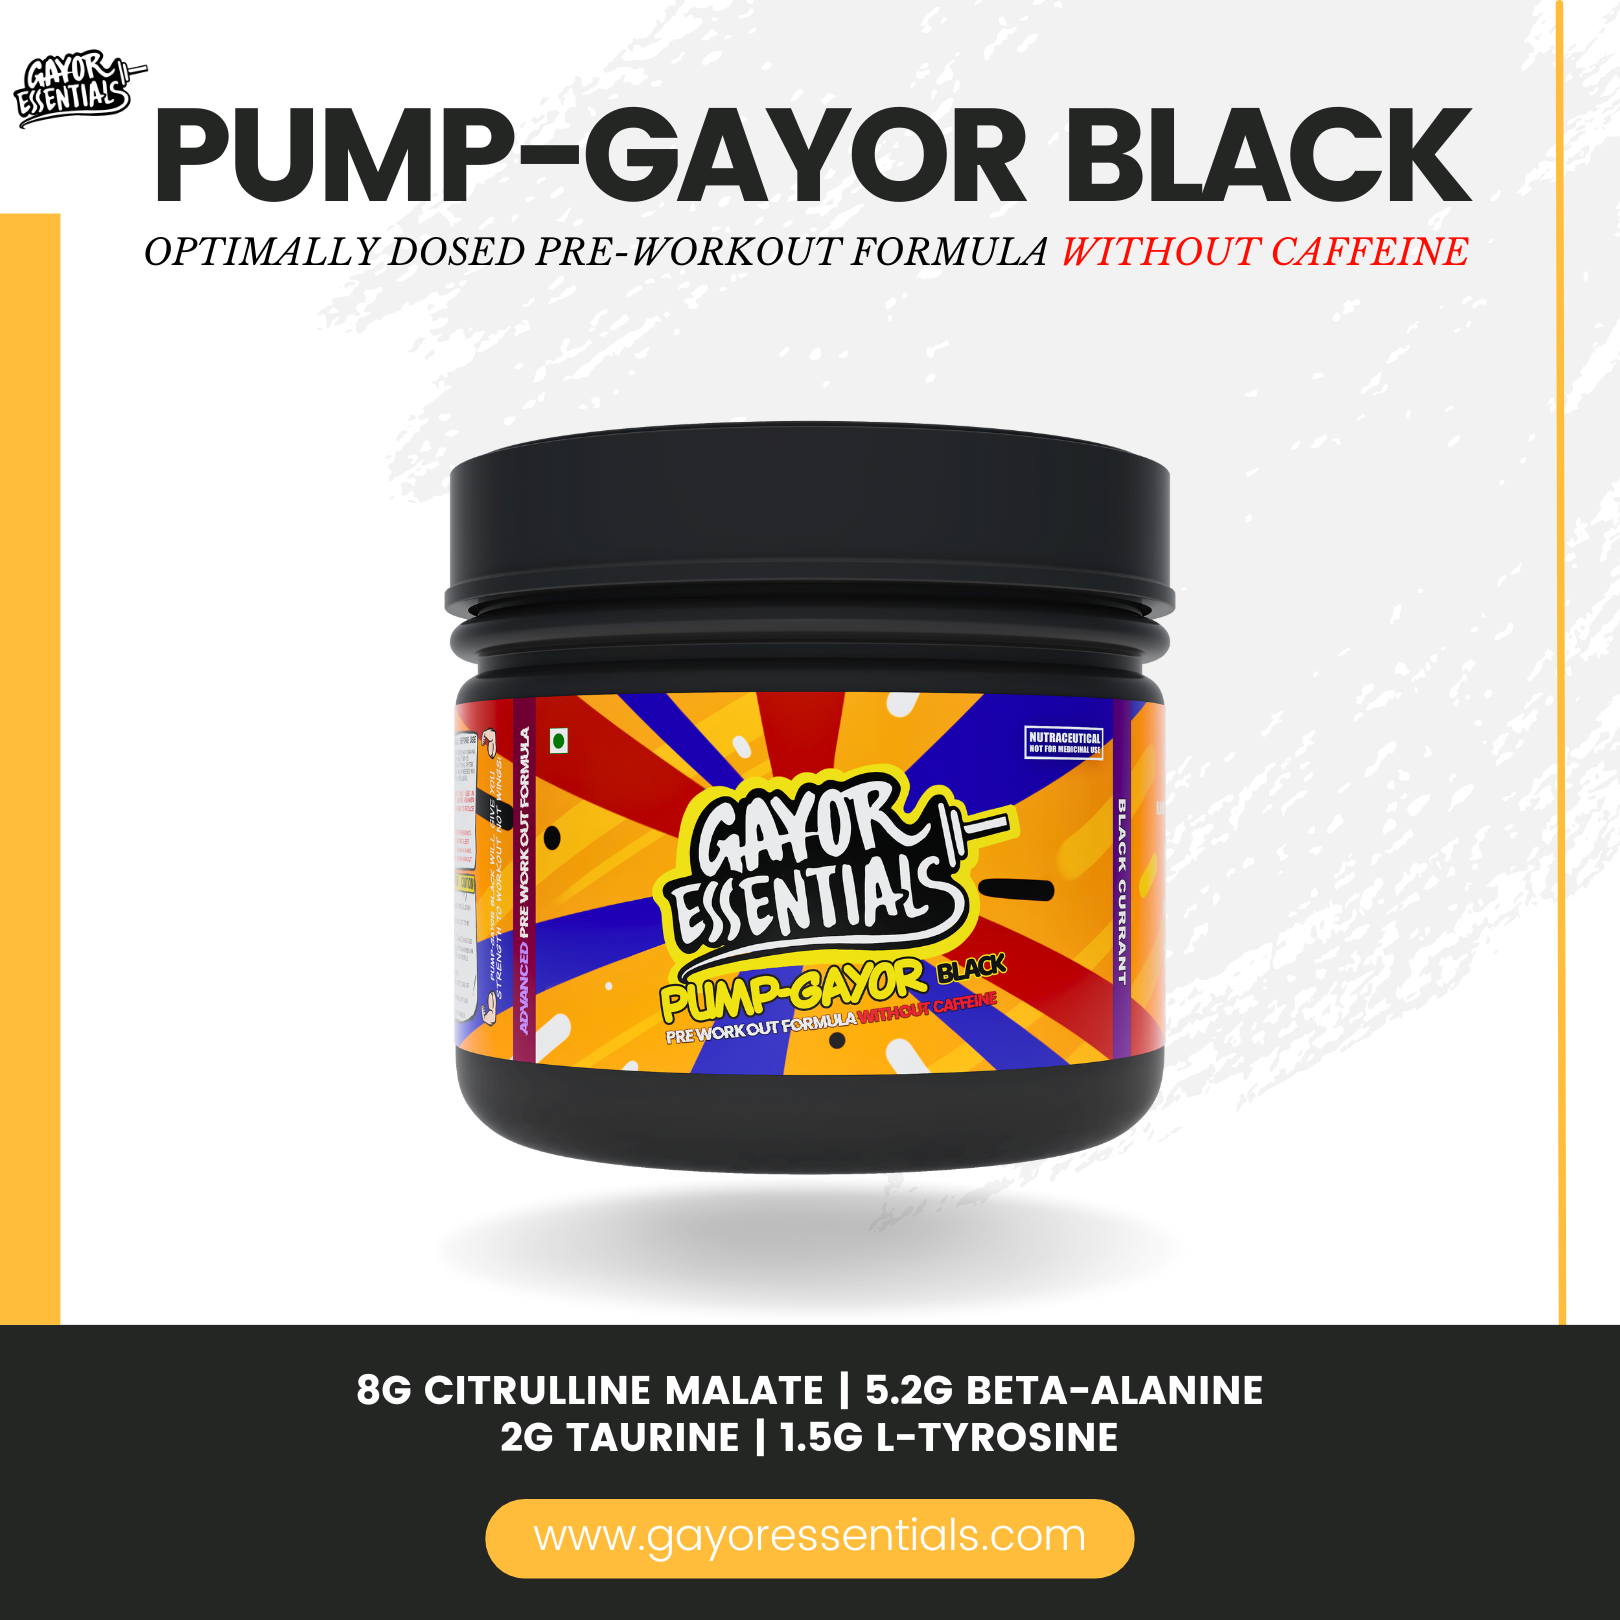 2 x Pump Gayor Black + Steel Shaker Bundle